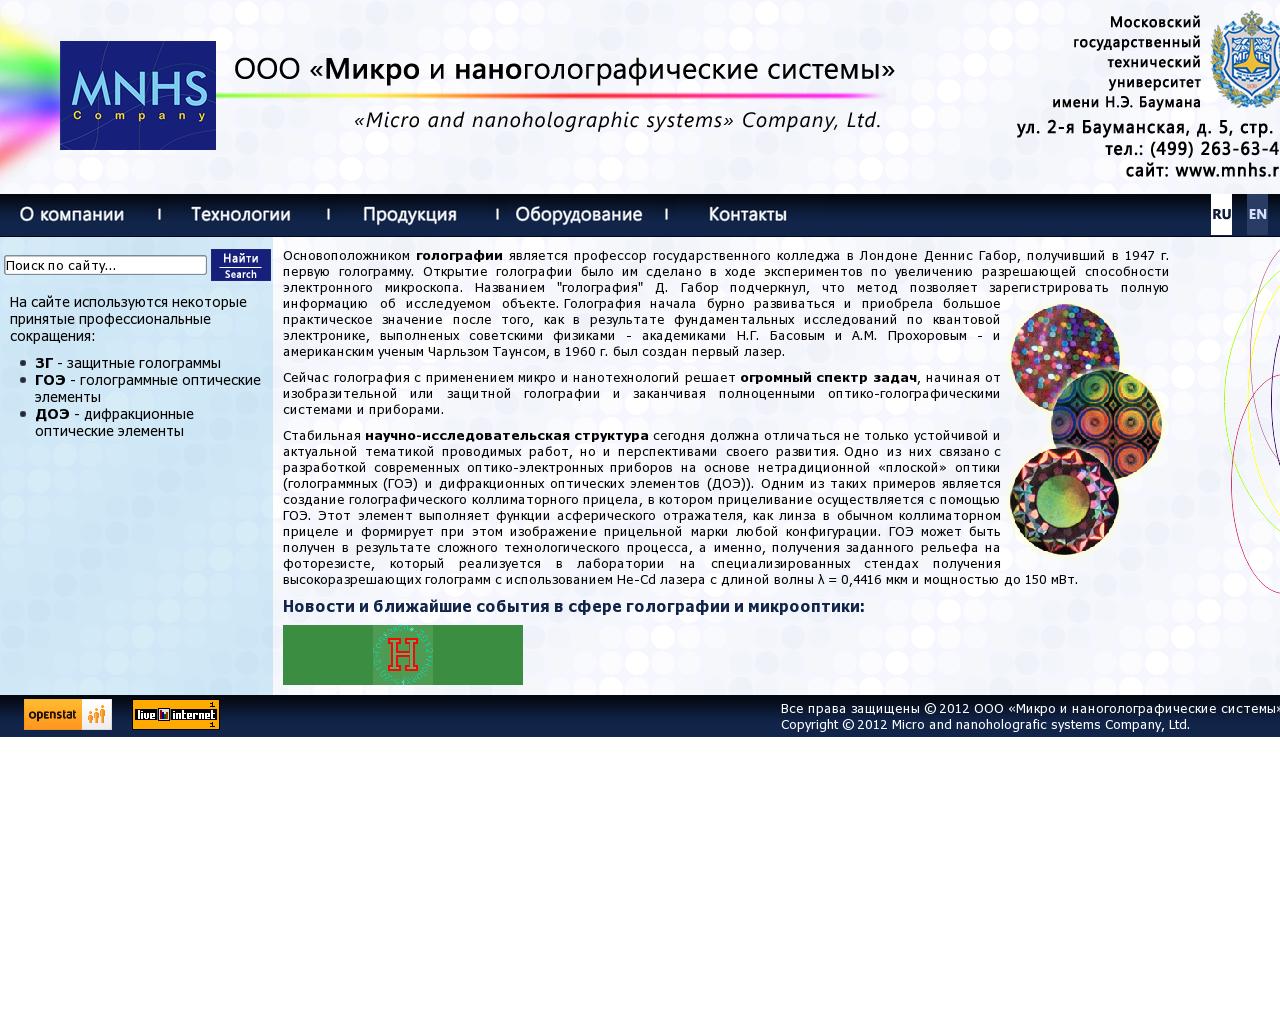 Изображение сайта mnhs.ru в разрешении 1280x1024